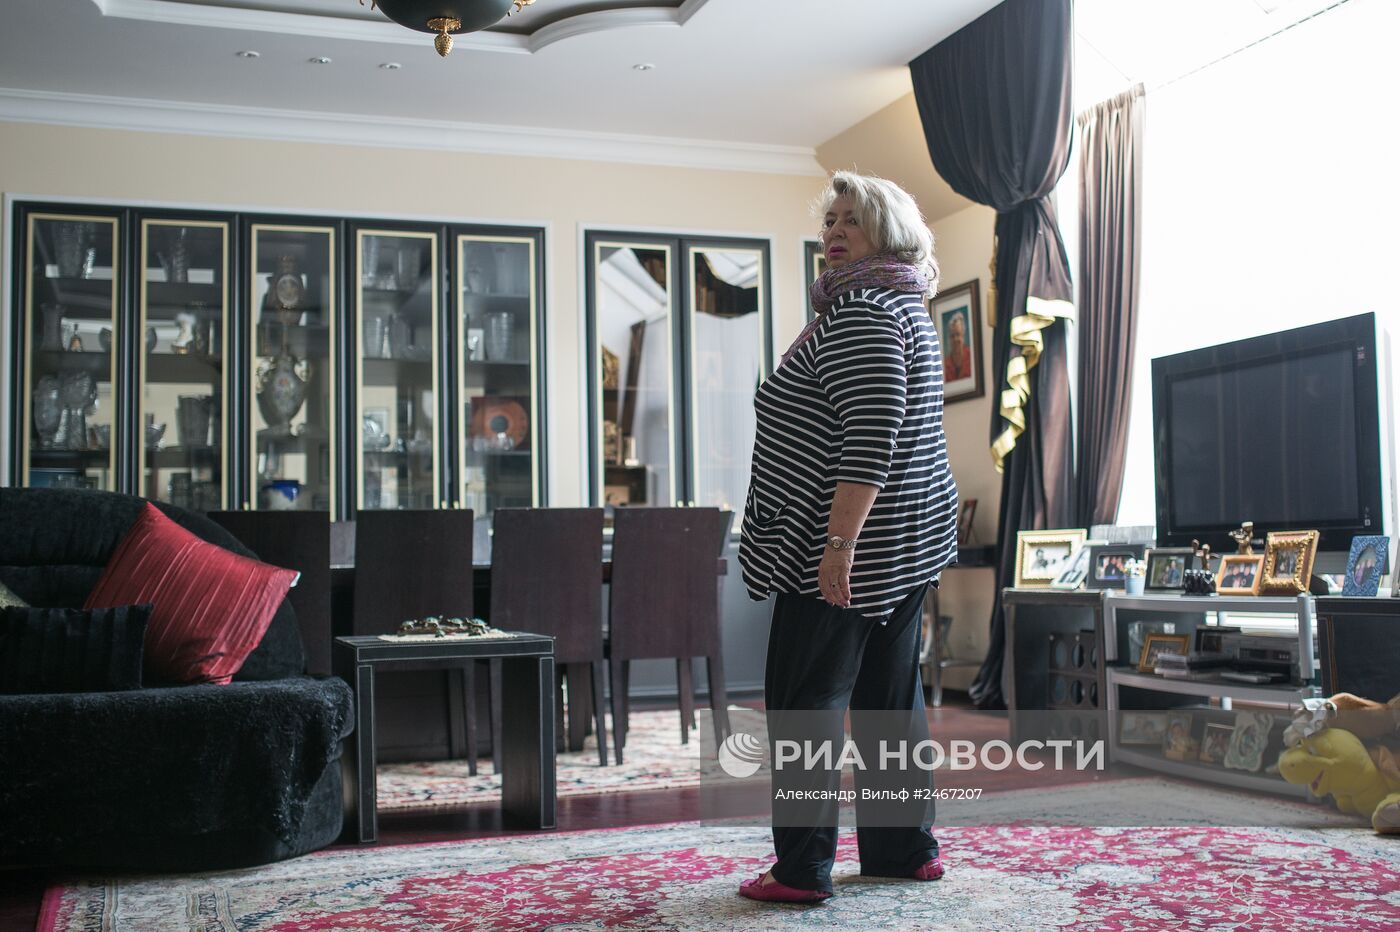 Тренер по фигурному катанию Татьяна Тарасова в своем доме в Подмосковье